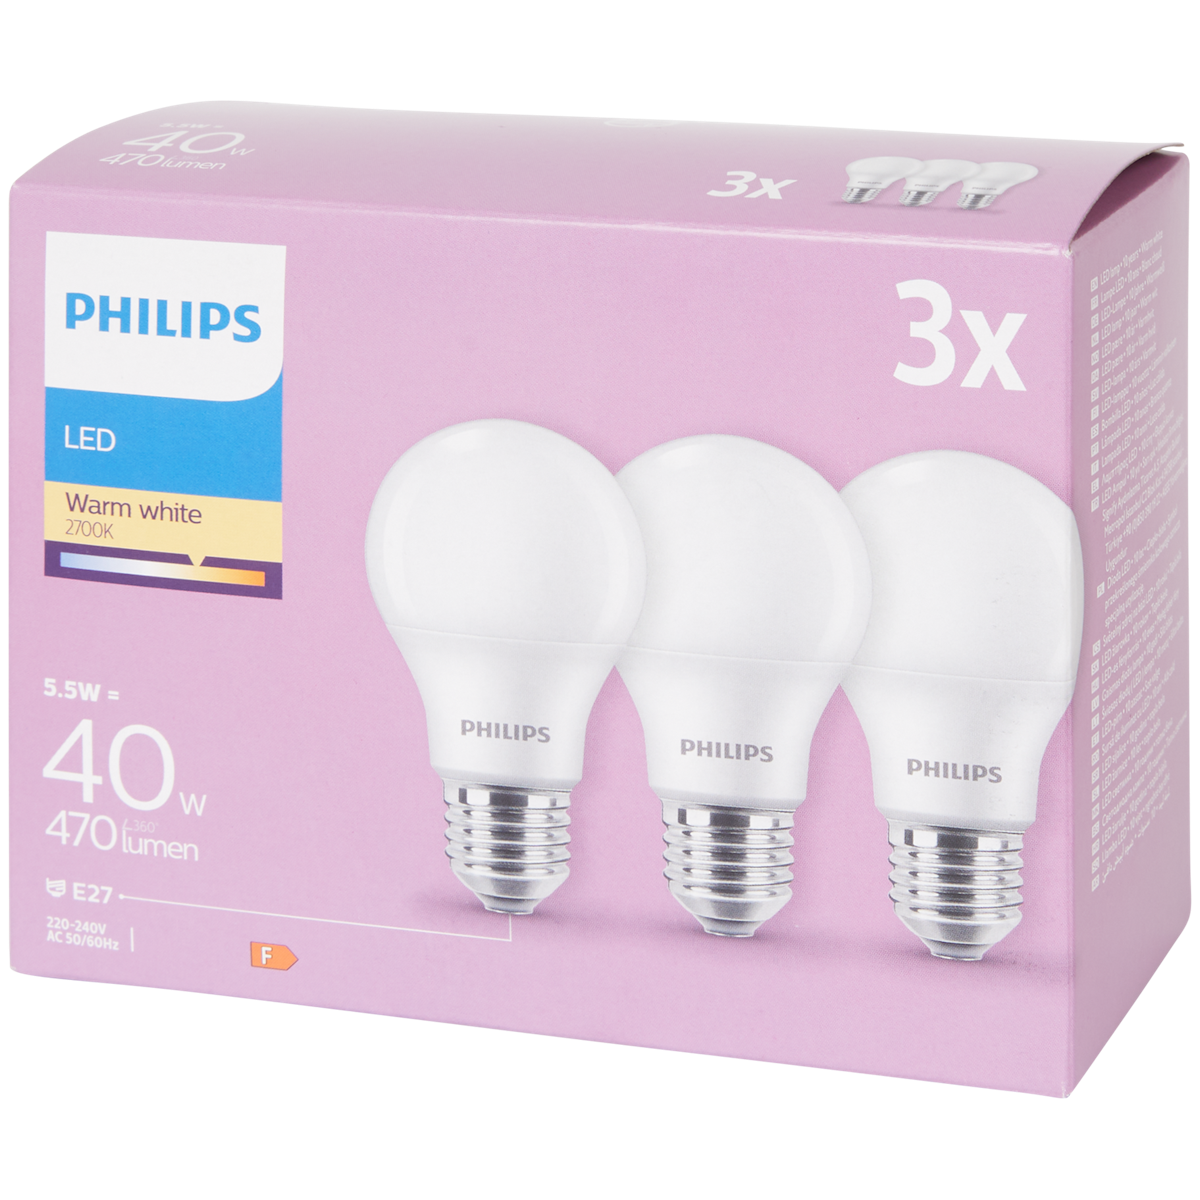 Philips ledlampen